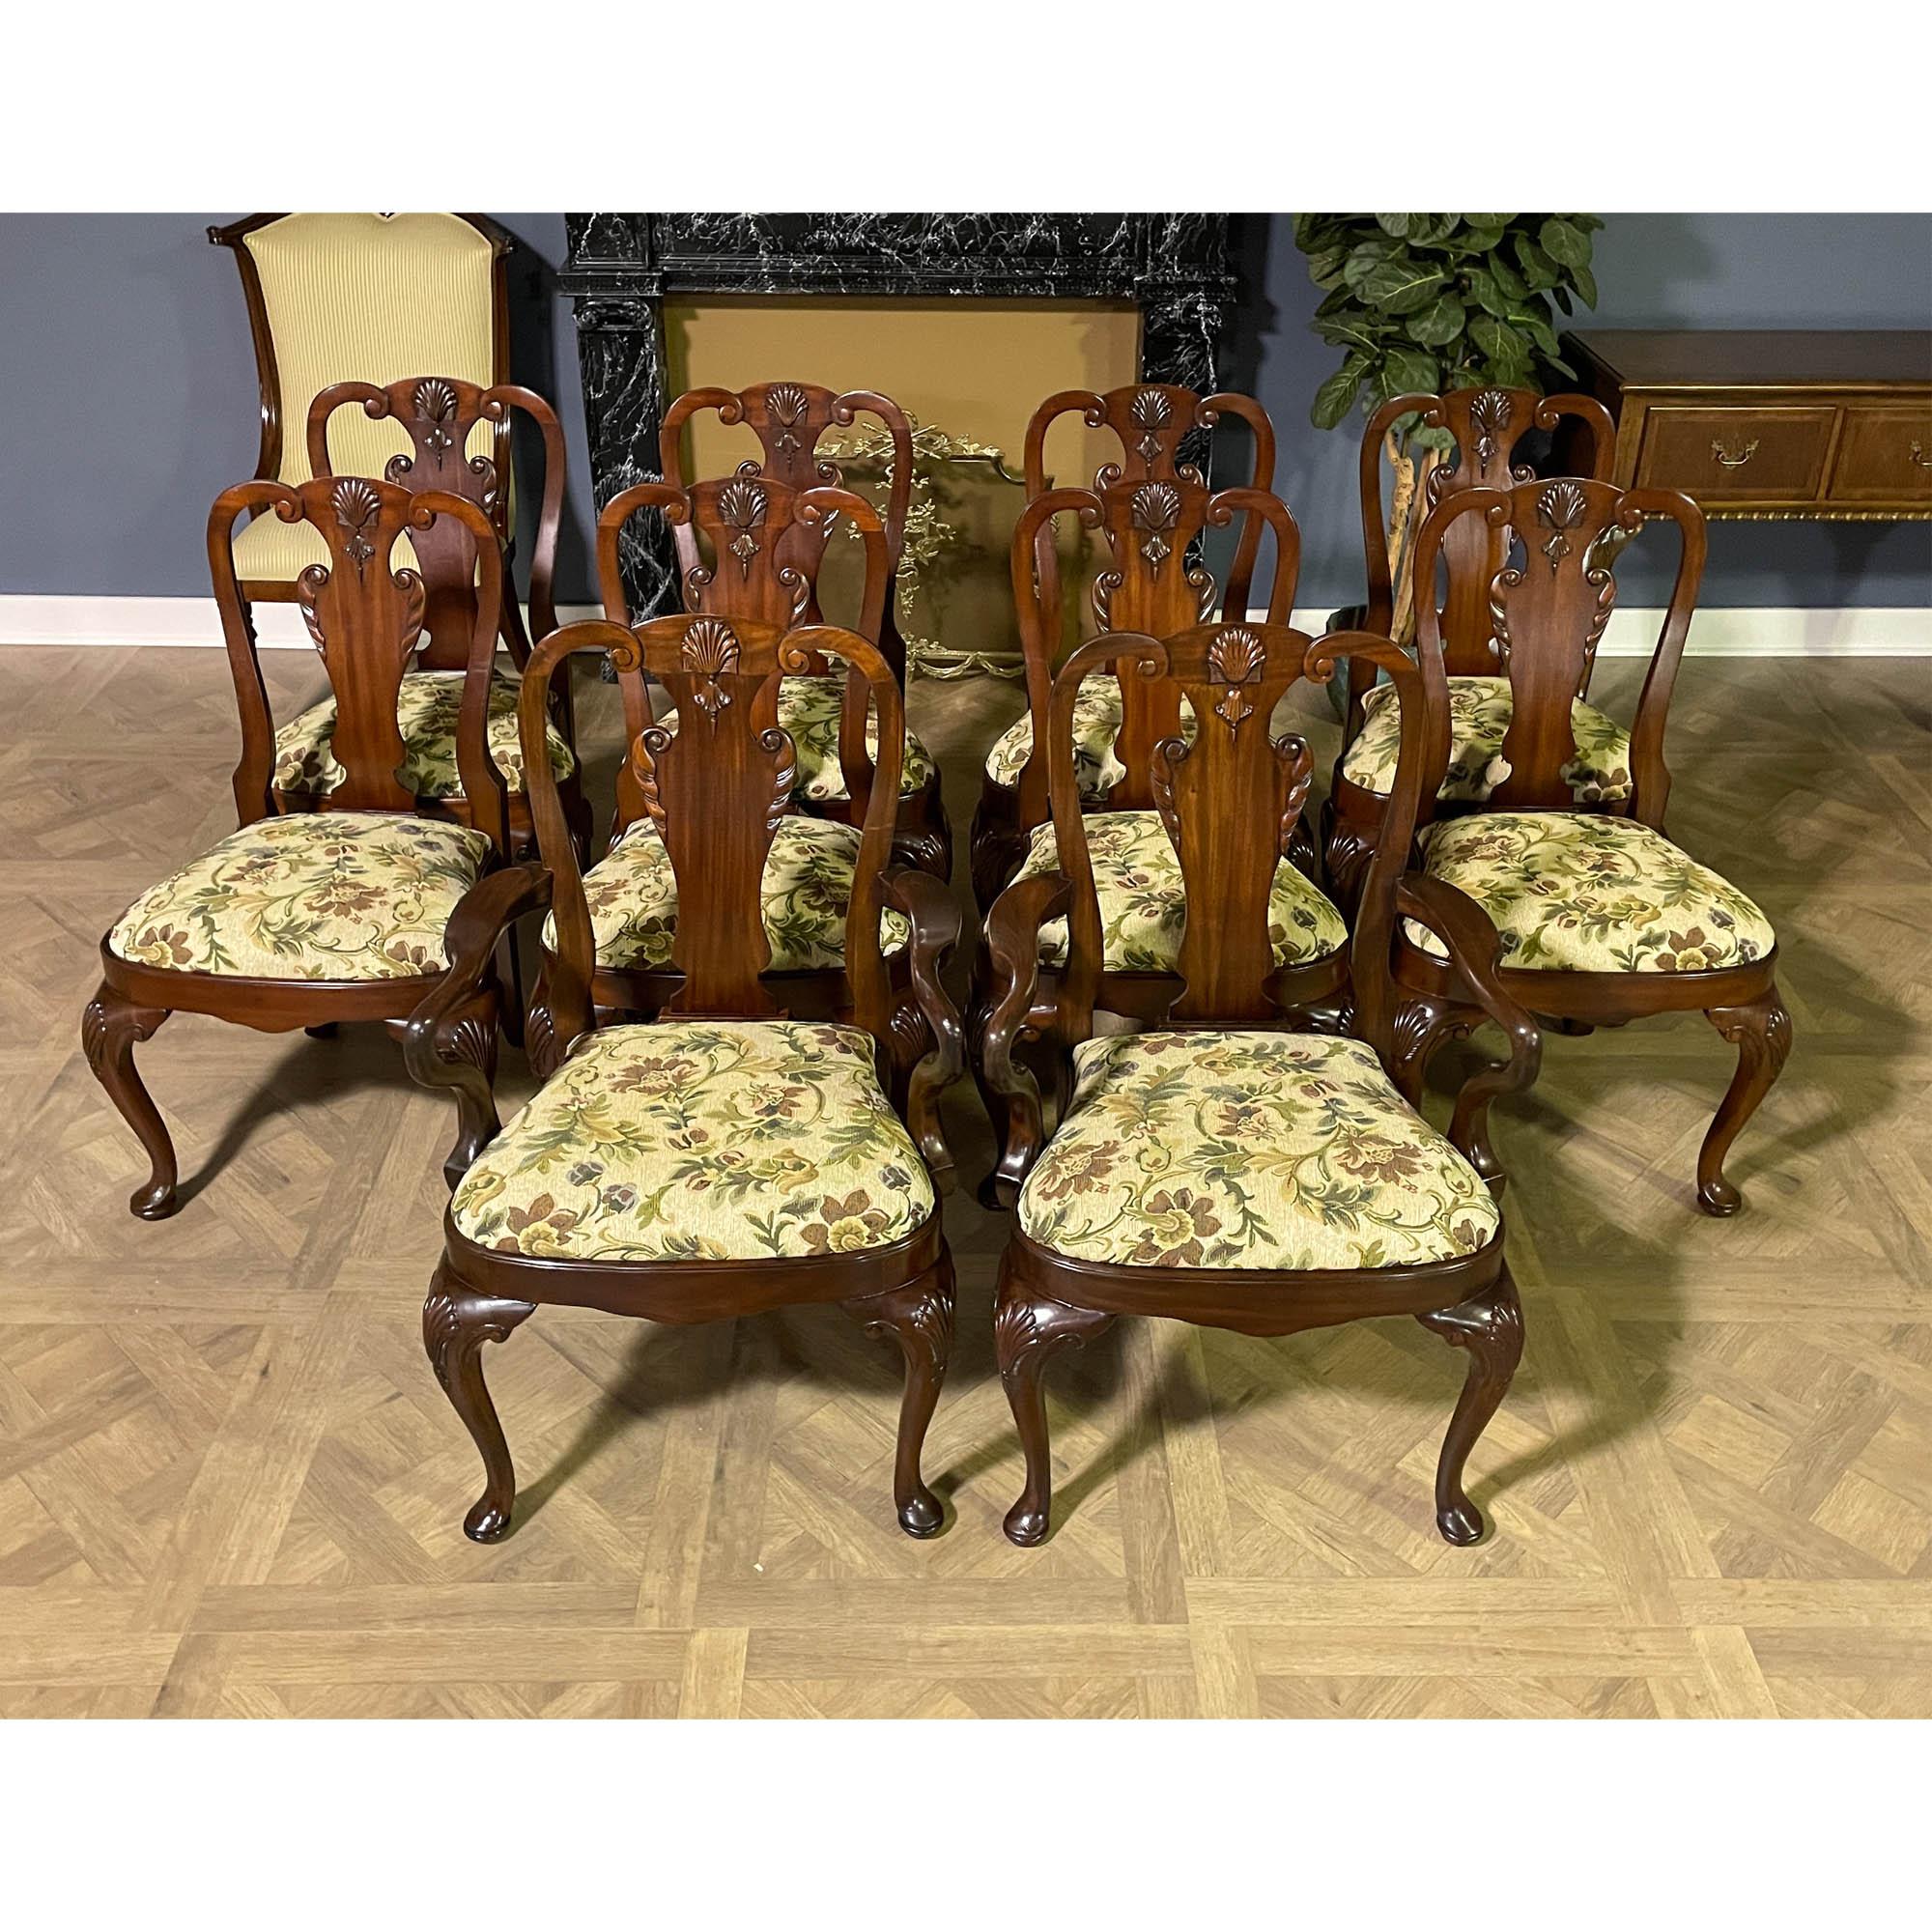 Ensemble de 10 chaises de salle à manger Vintage Maitland Smith comprenant 2 chaises à accoudoir et 8 chaises d'appoint. Les fauteuils sont larges et confortables et présentent des accoudoirs magnifiquement sculptés, ce qui leur confère un aspect